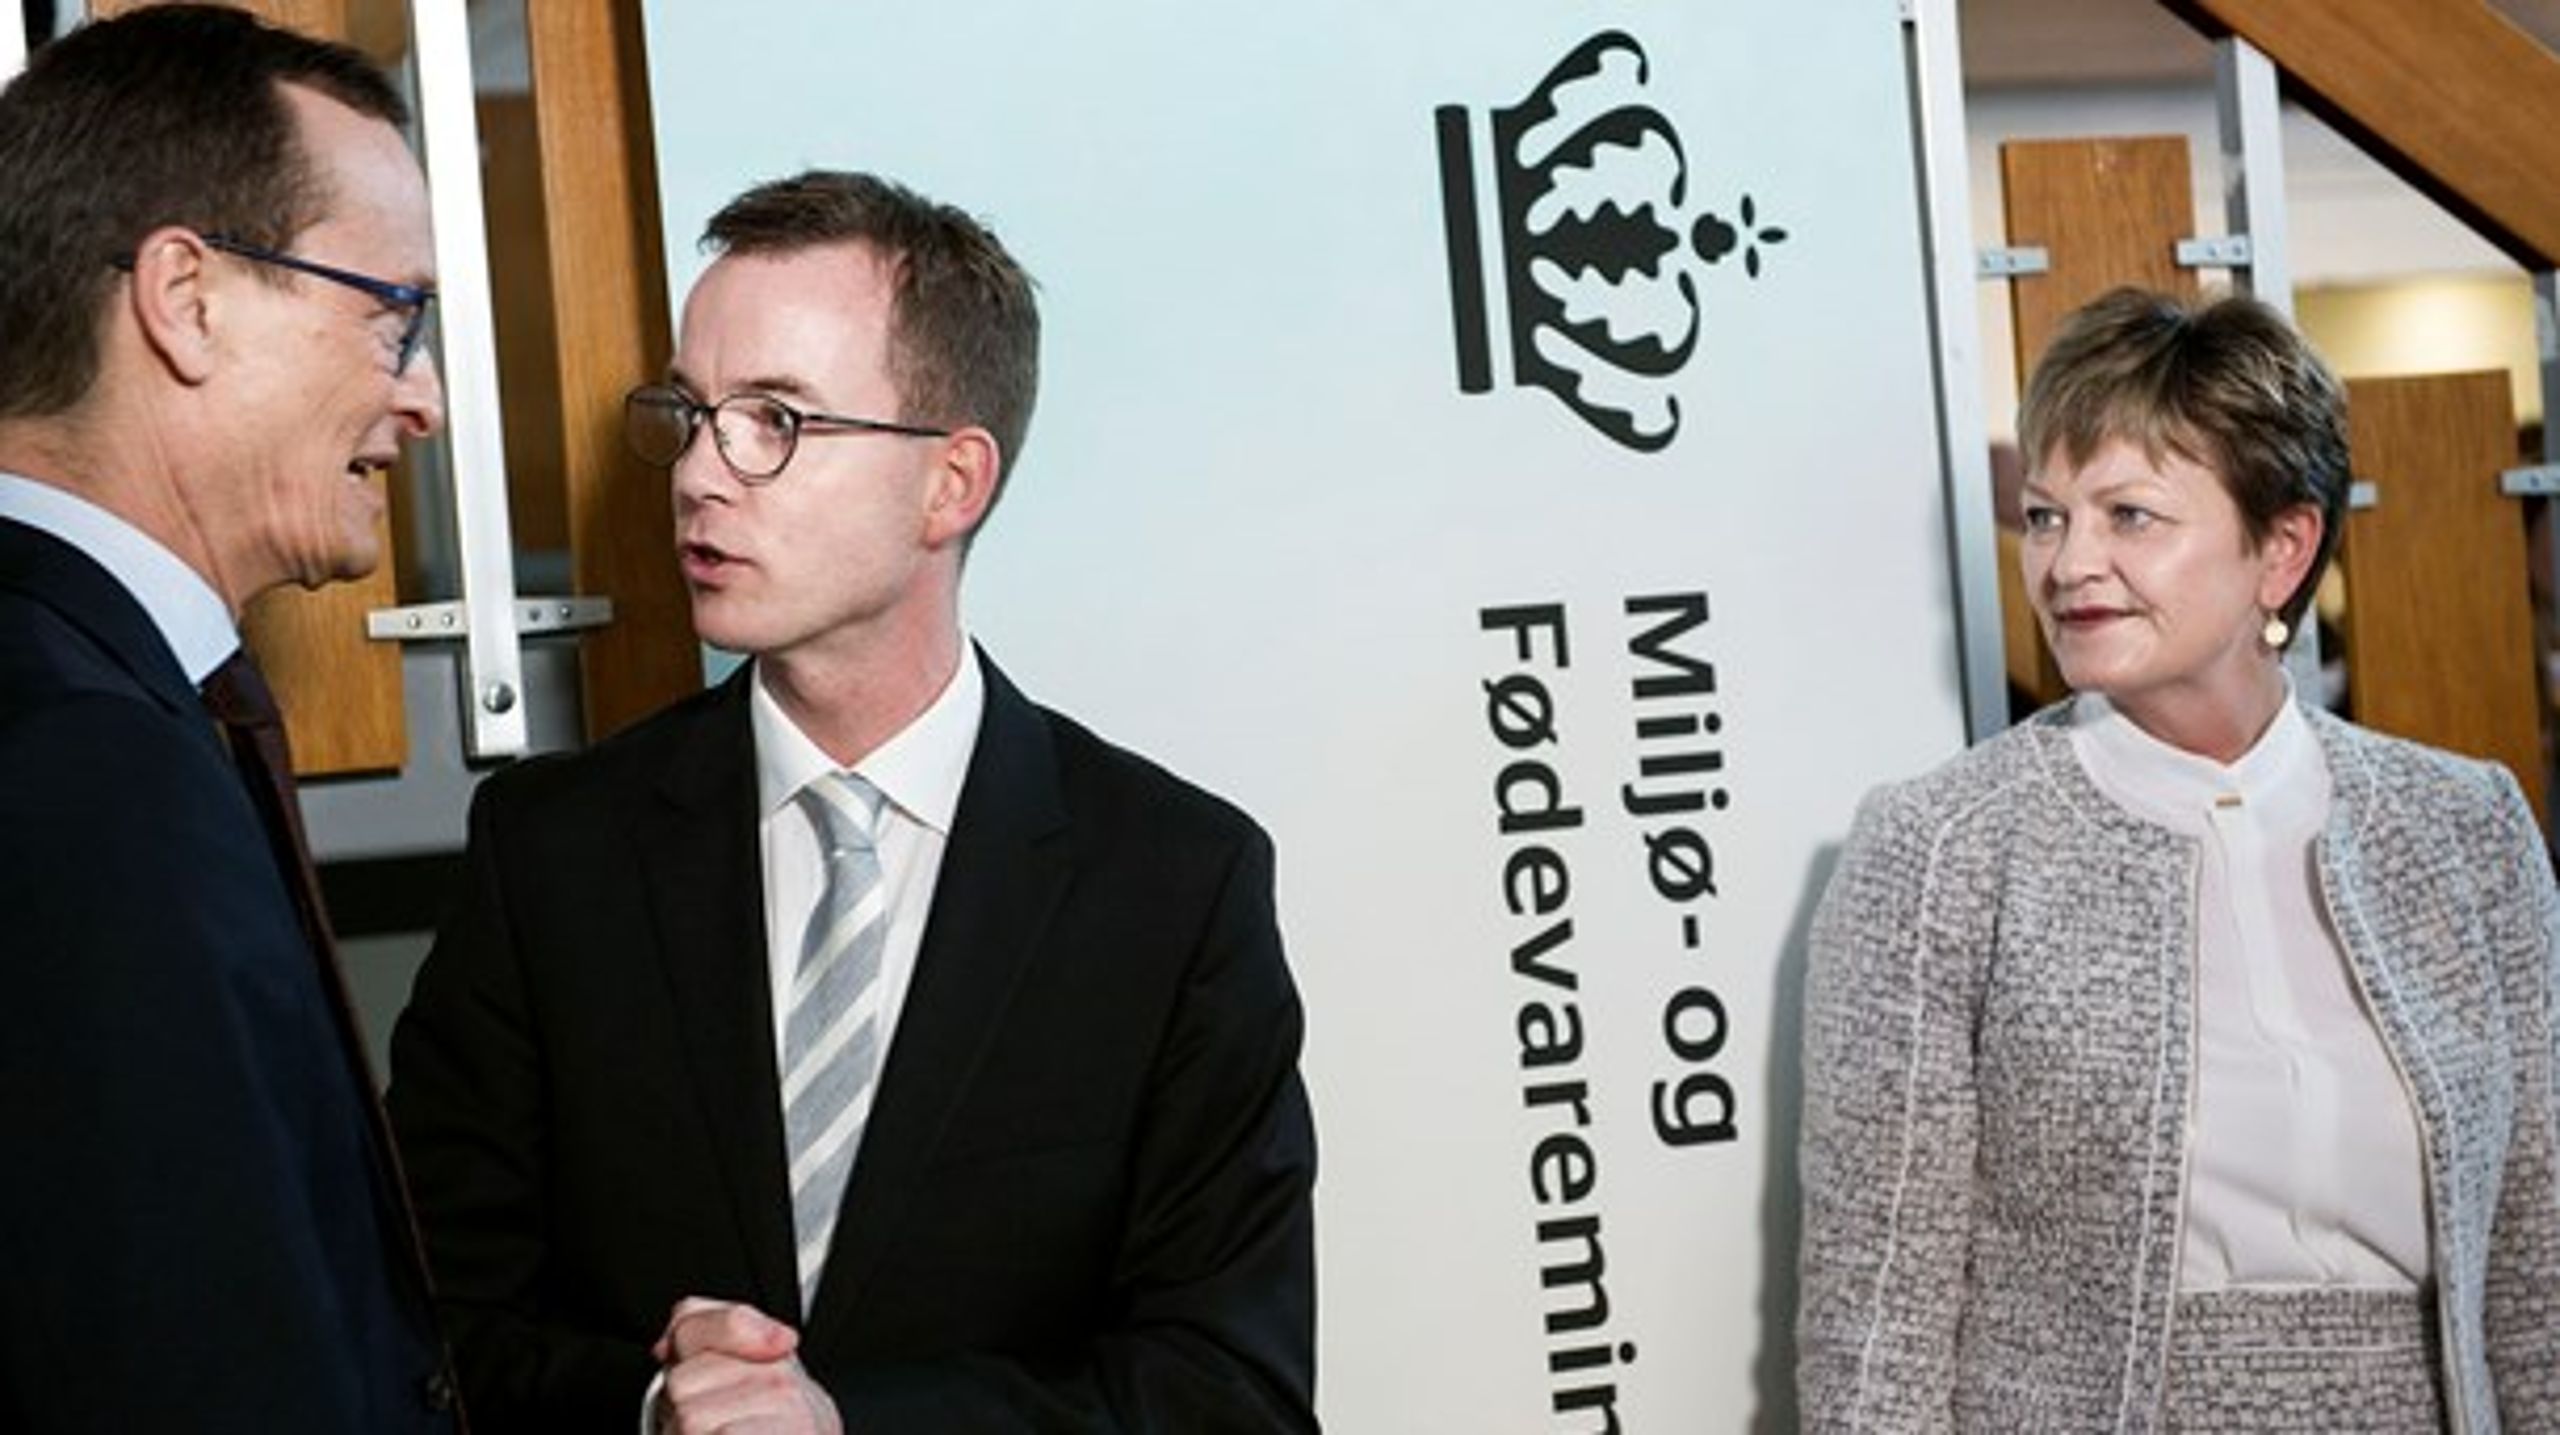 Henrik Studsgaard (tv.) har været departementchef under alle ændringerne i Miljø- og Fødevarerministeriet. Her ses han med Esben Lunde Larsen (midten) og Eva Kjer Hansen, der begge har været ministre undervejs.